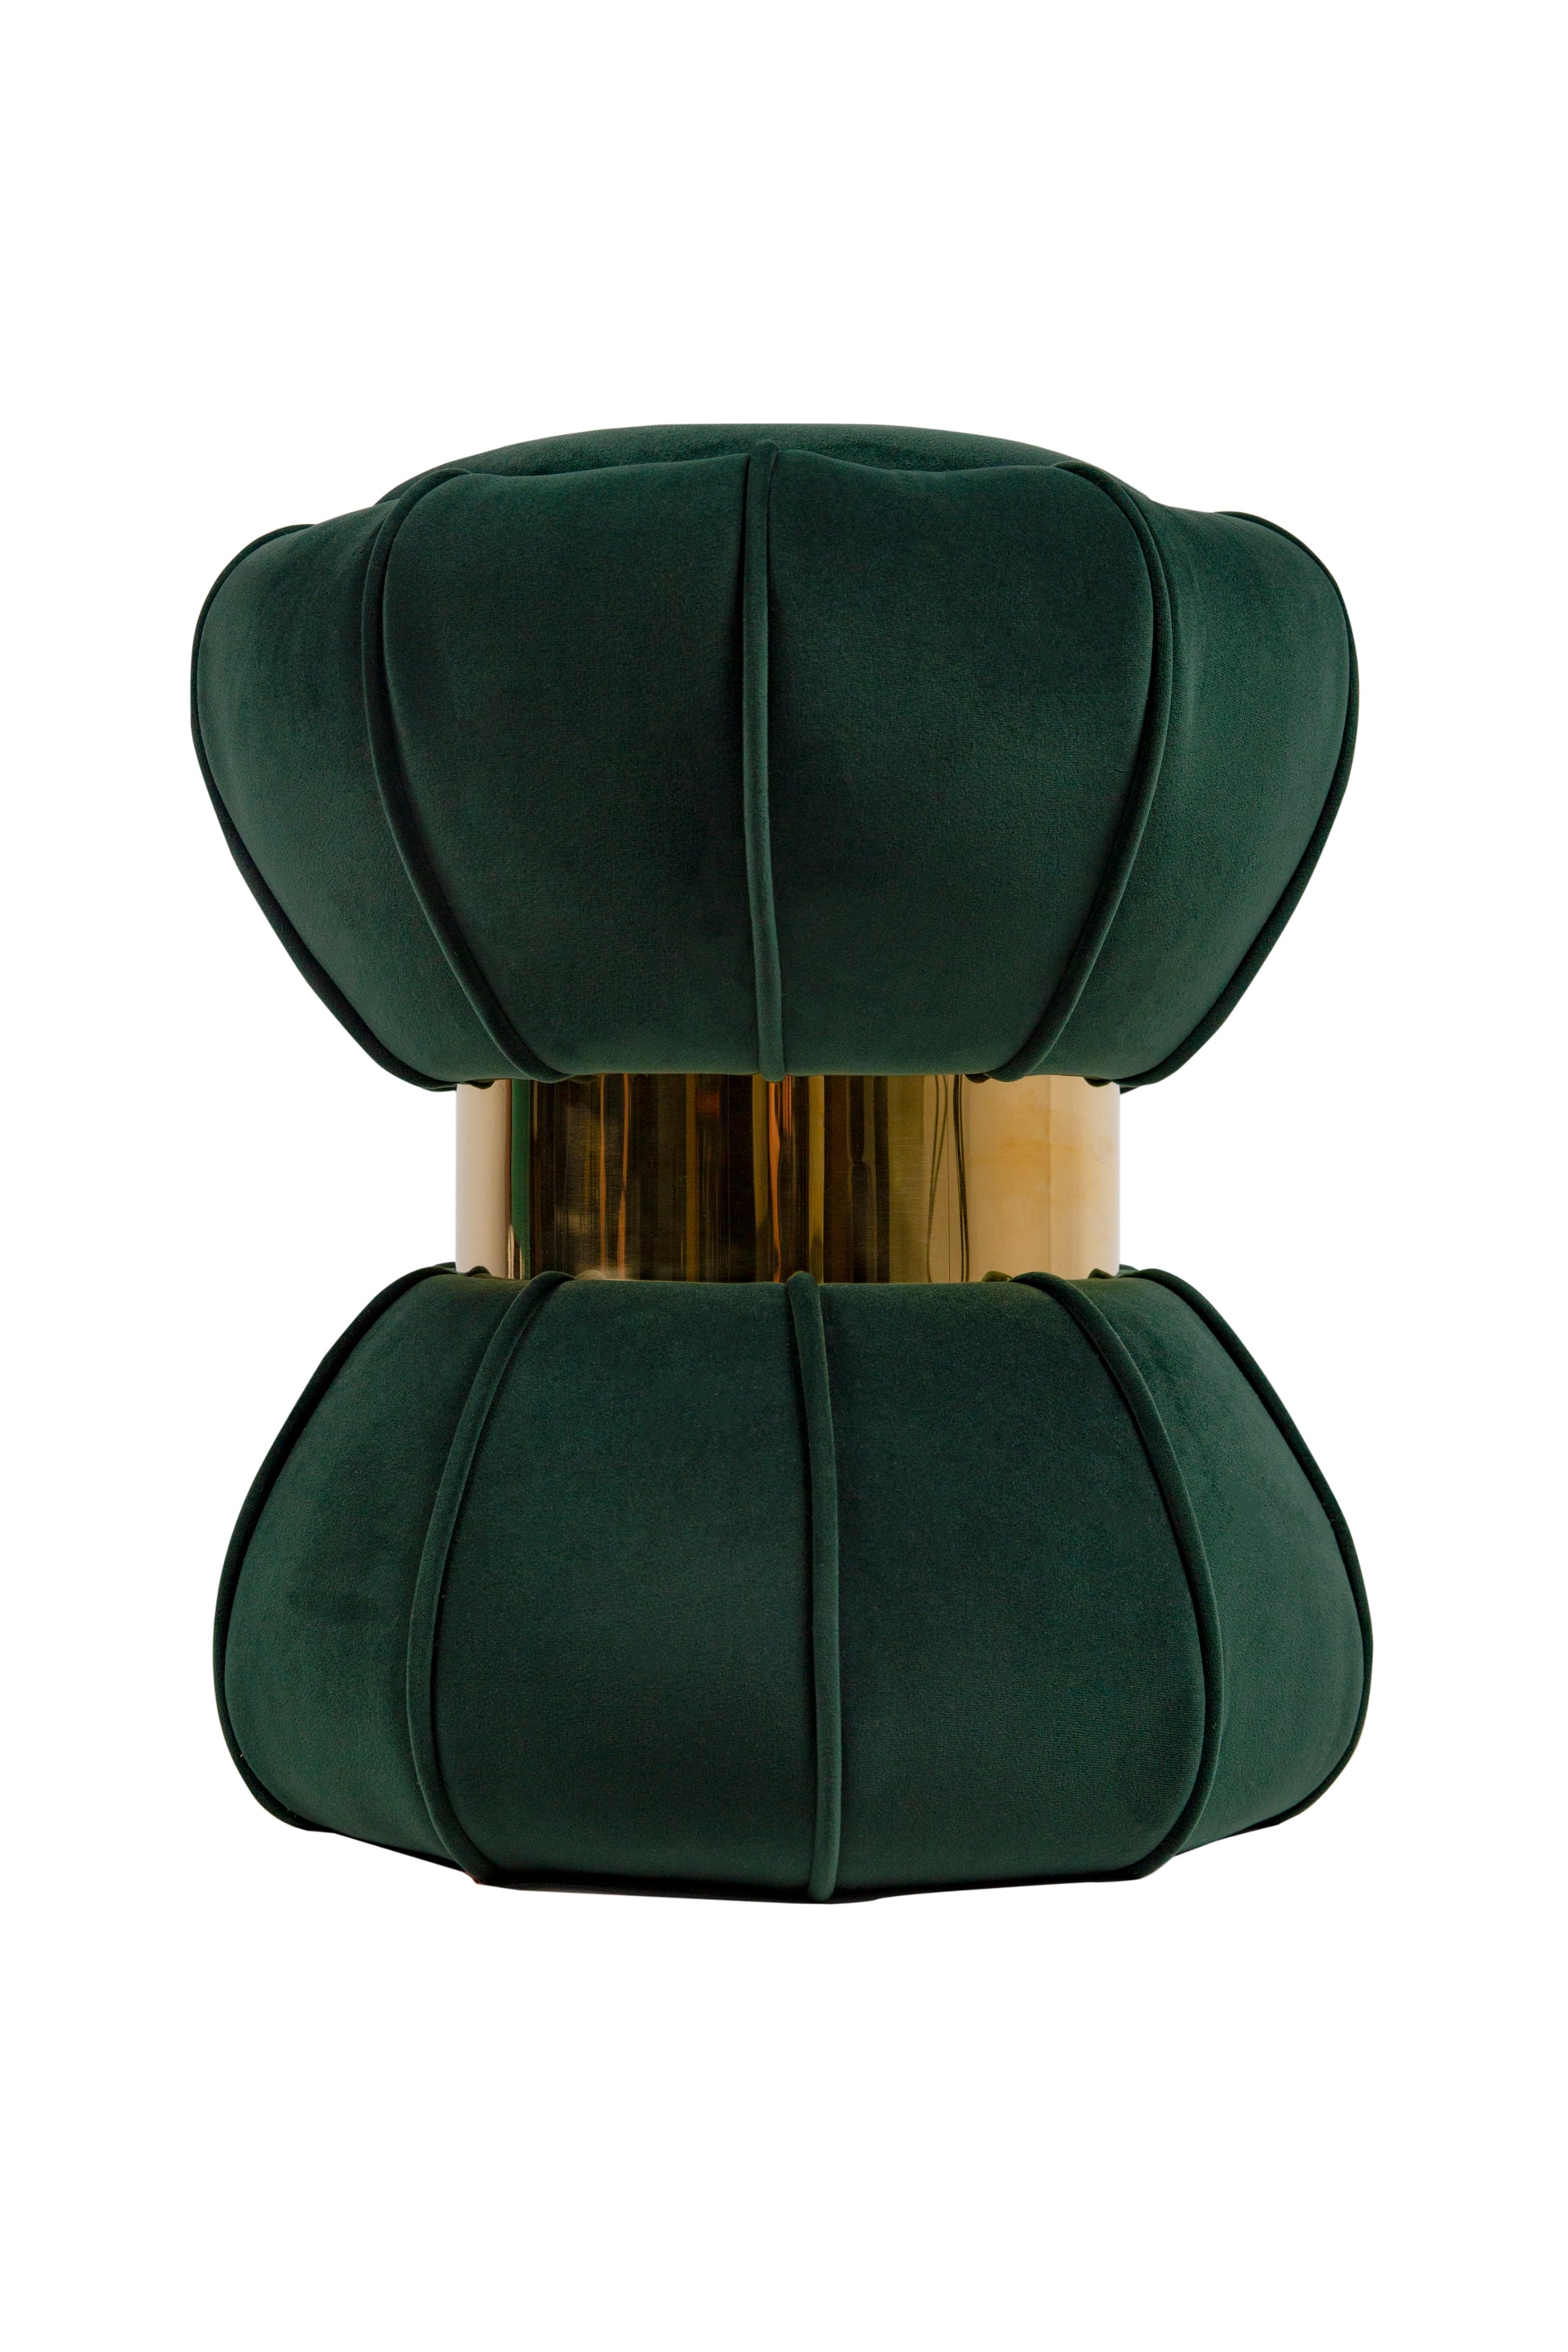 18.5'' Tall Stainless Steel Upholstered Ottoman in green-velvet